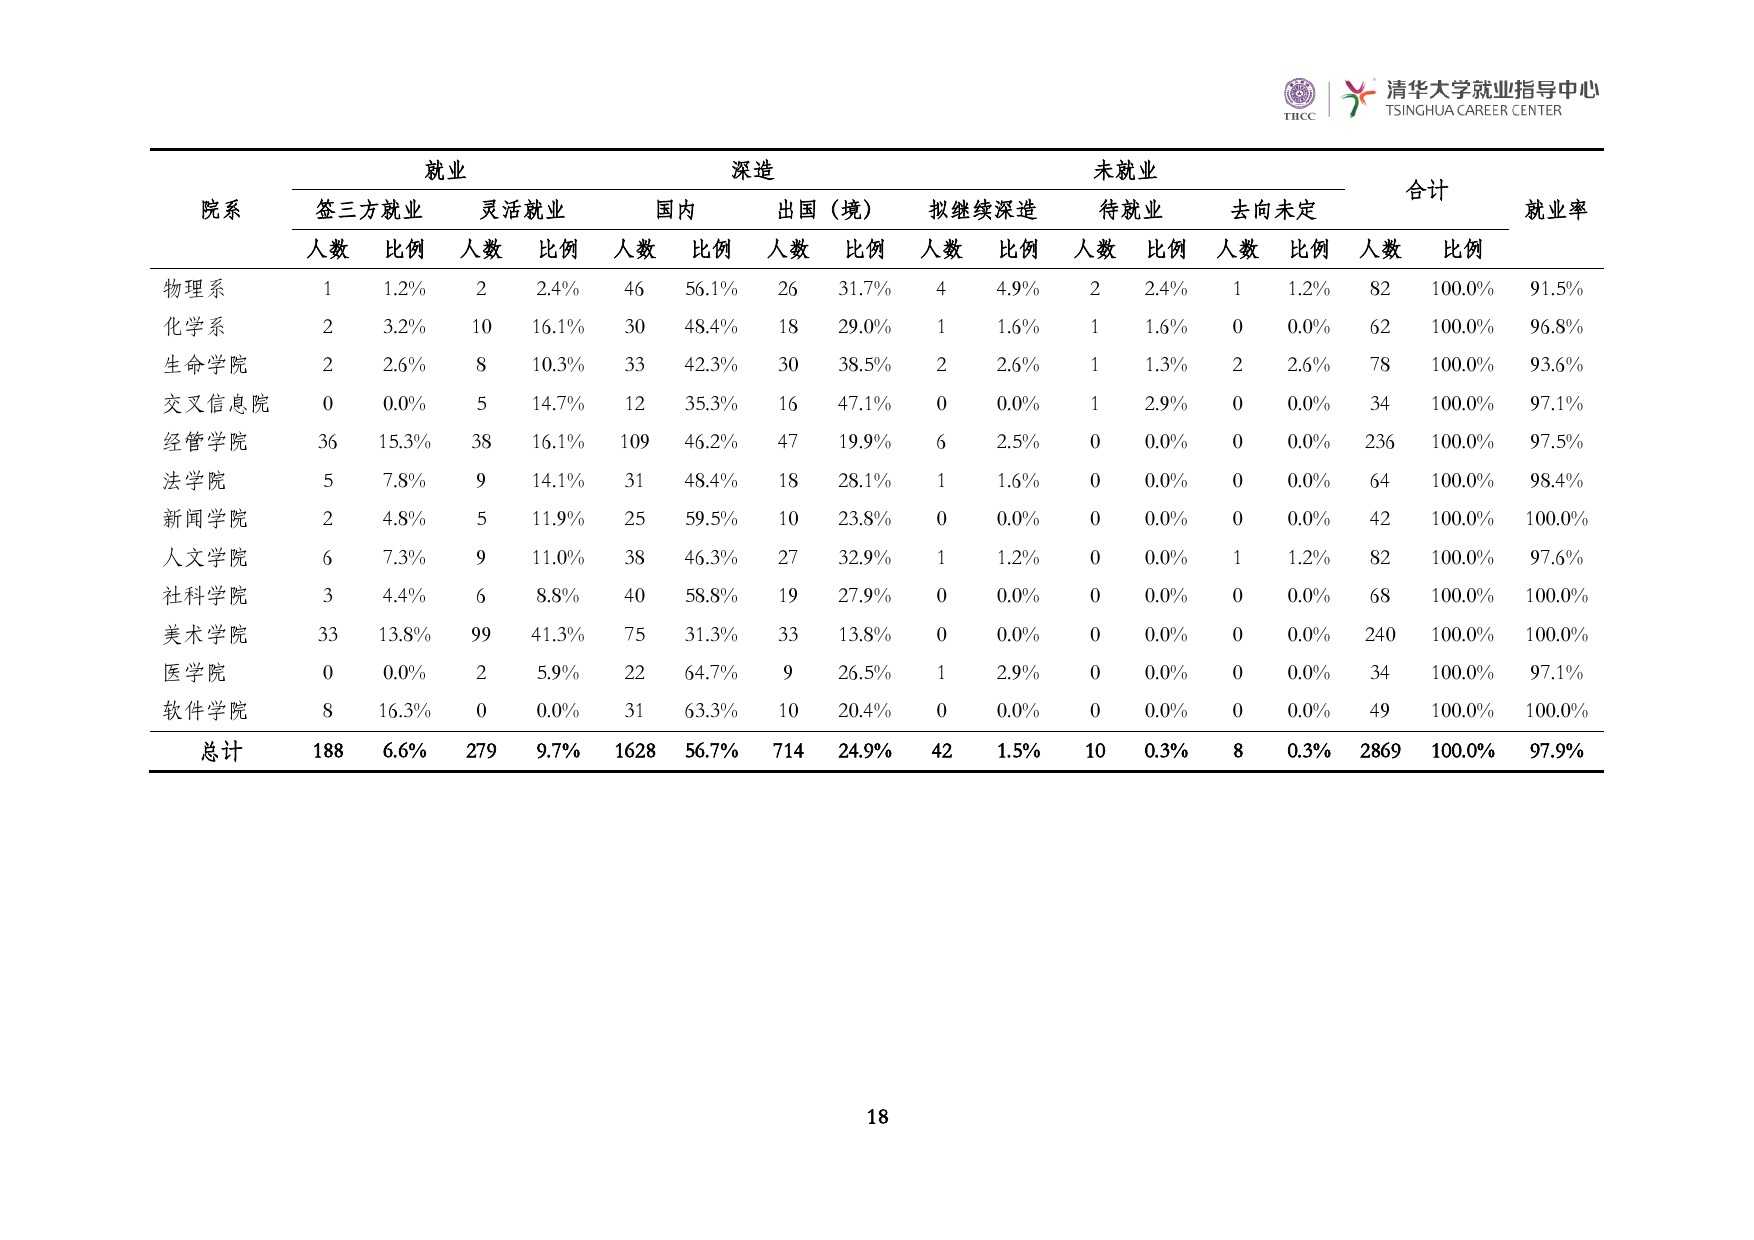 清華大學2014 年畢業生就業質量報告_000020